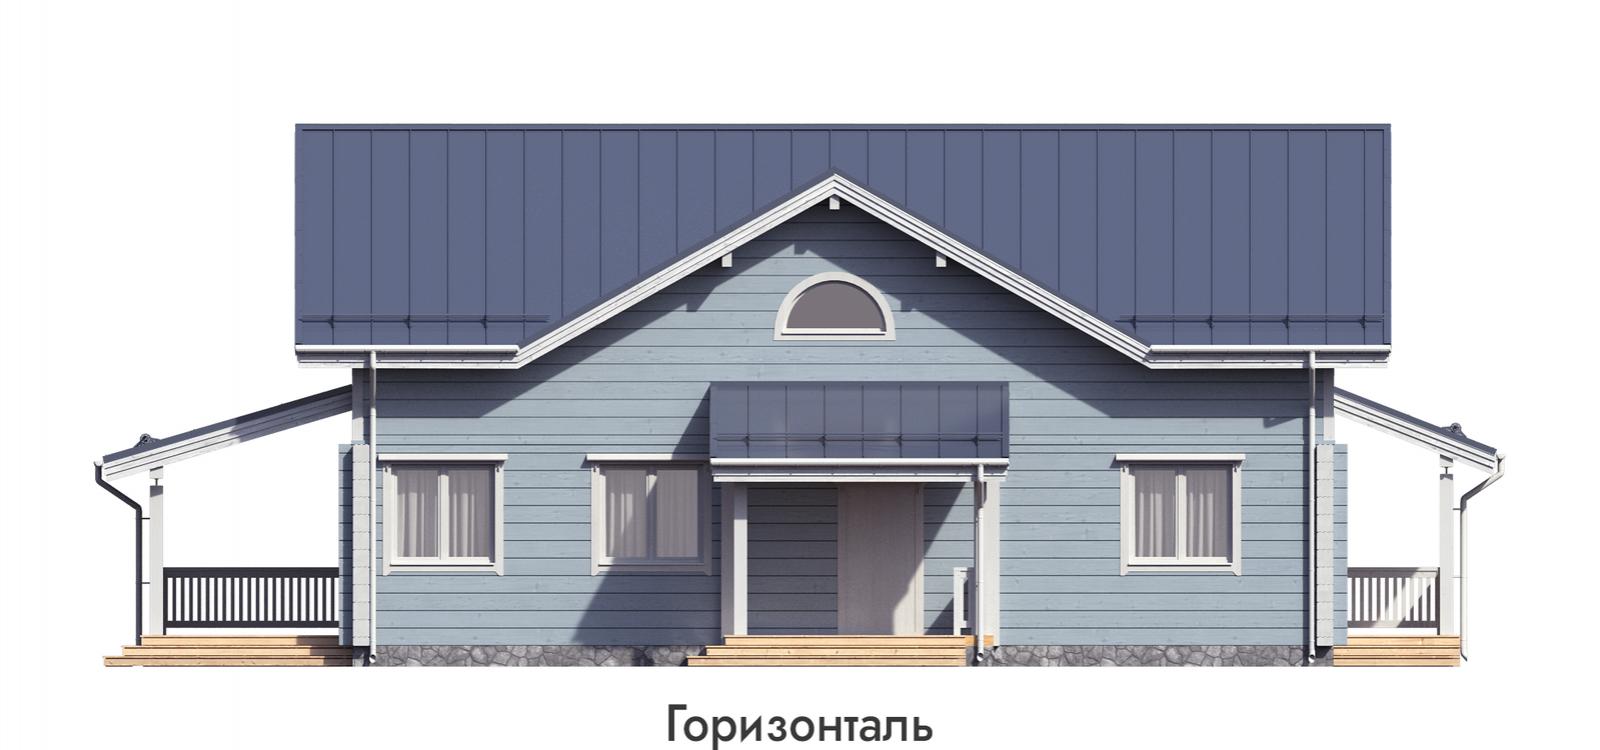 Проект дома «Кирилловское» (фото 13)